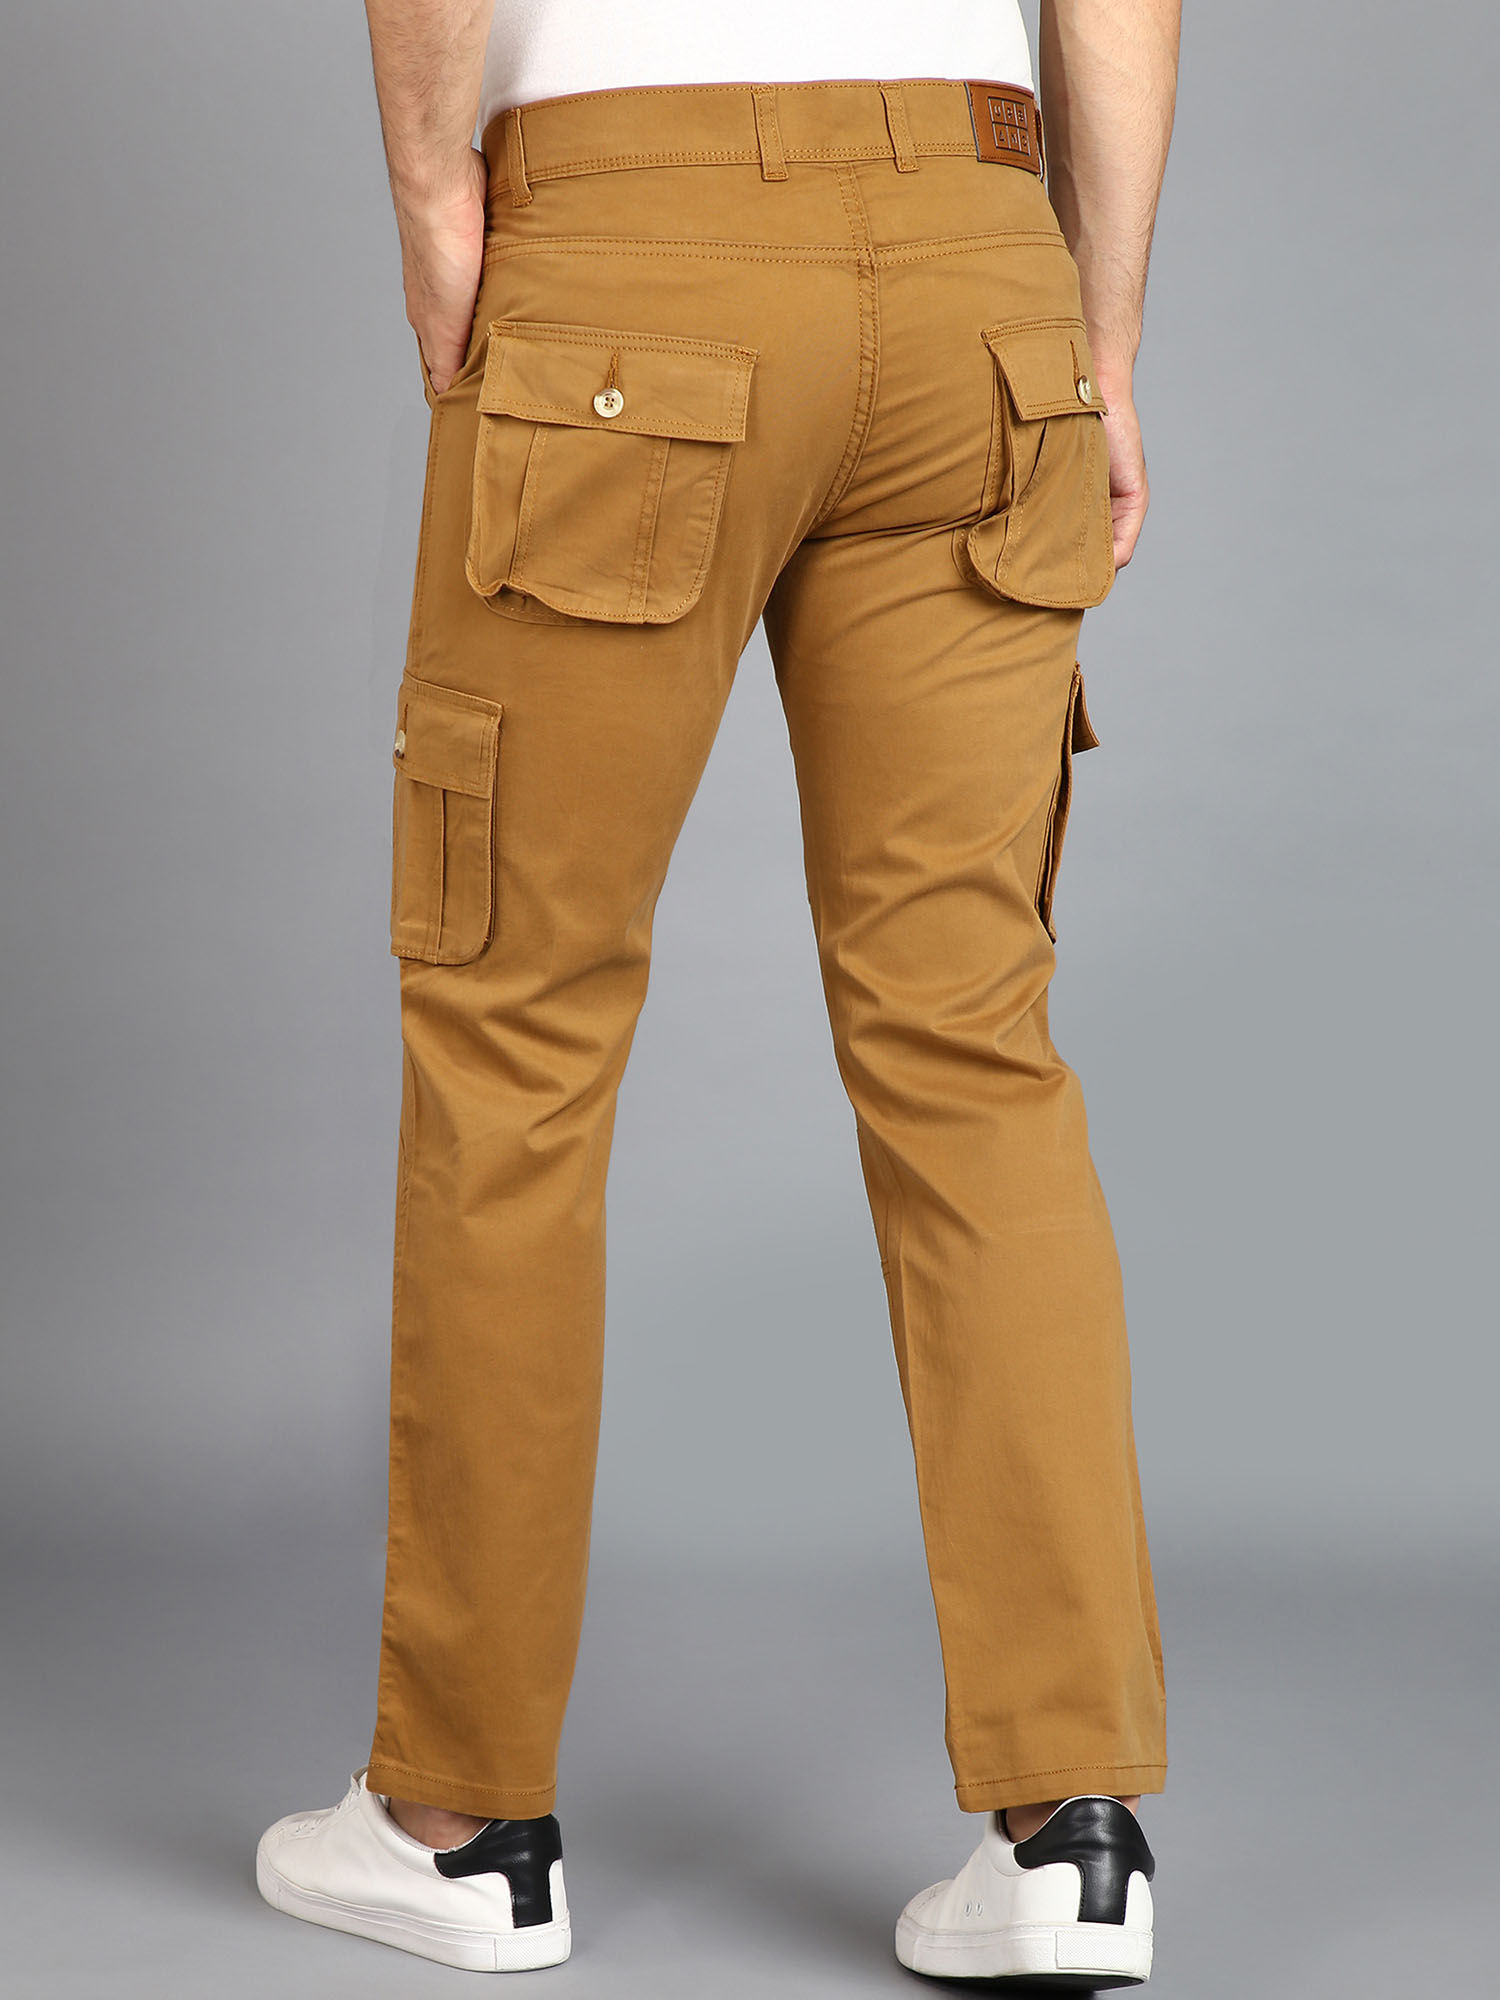 Outdoorweb.eu - Pilon M, dark khaki - Men's outdoor trousers - HUSKY -  53.78 € - outdoorové oblečení a vybavení shop